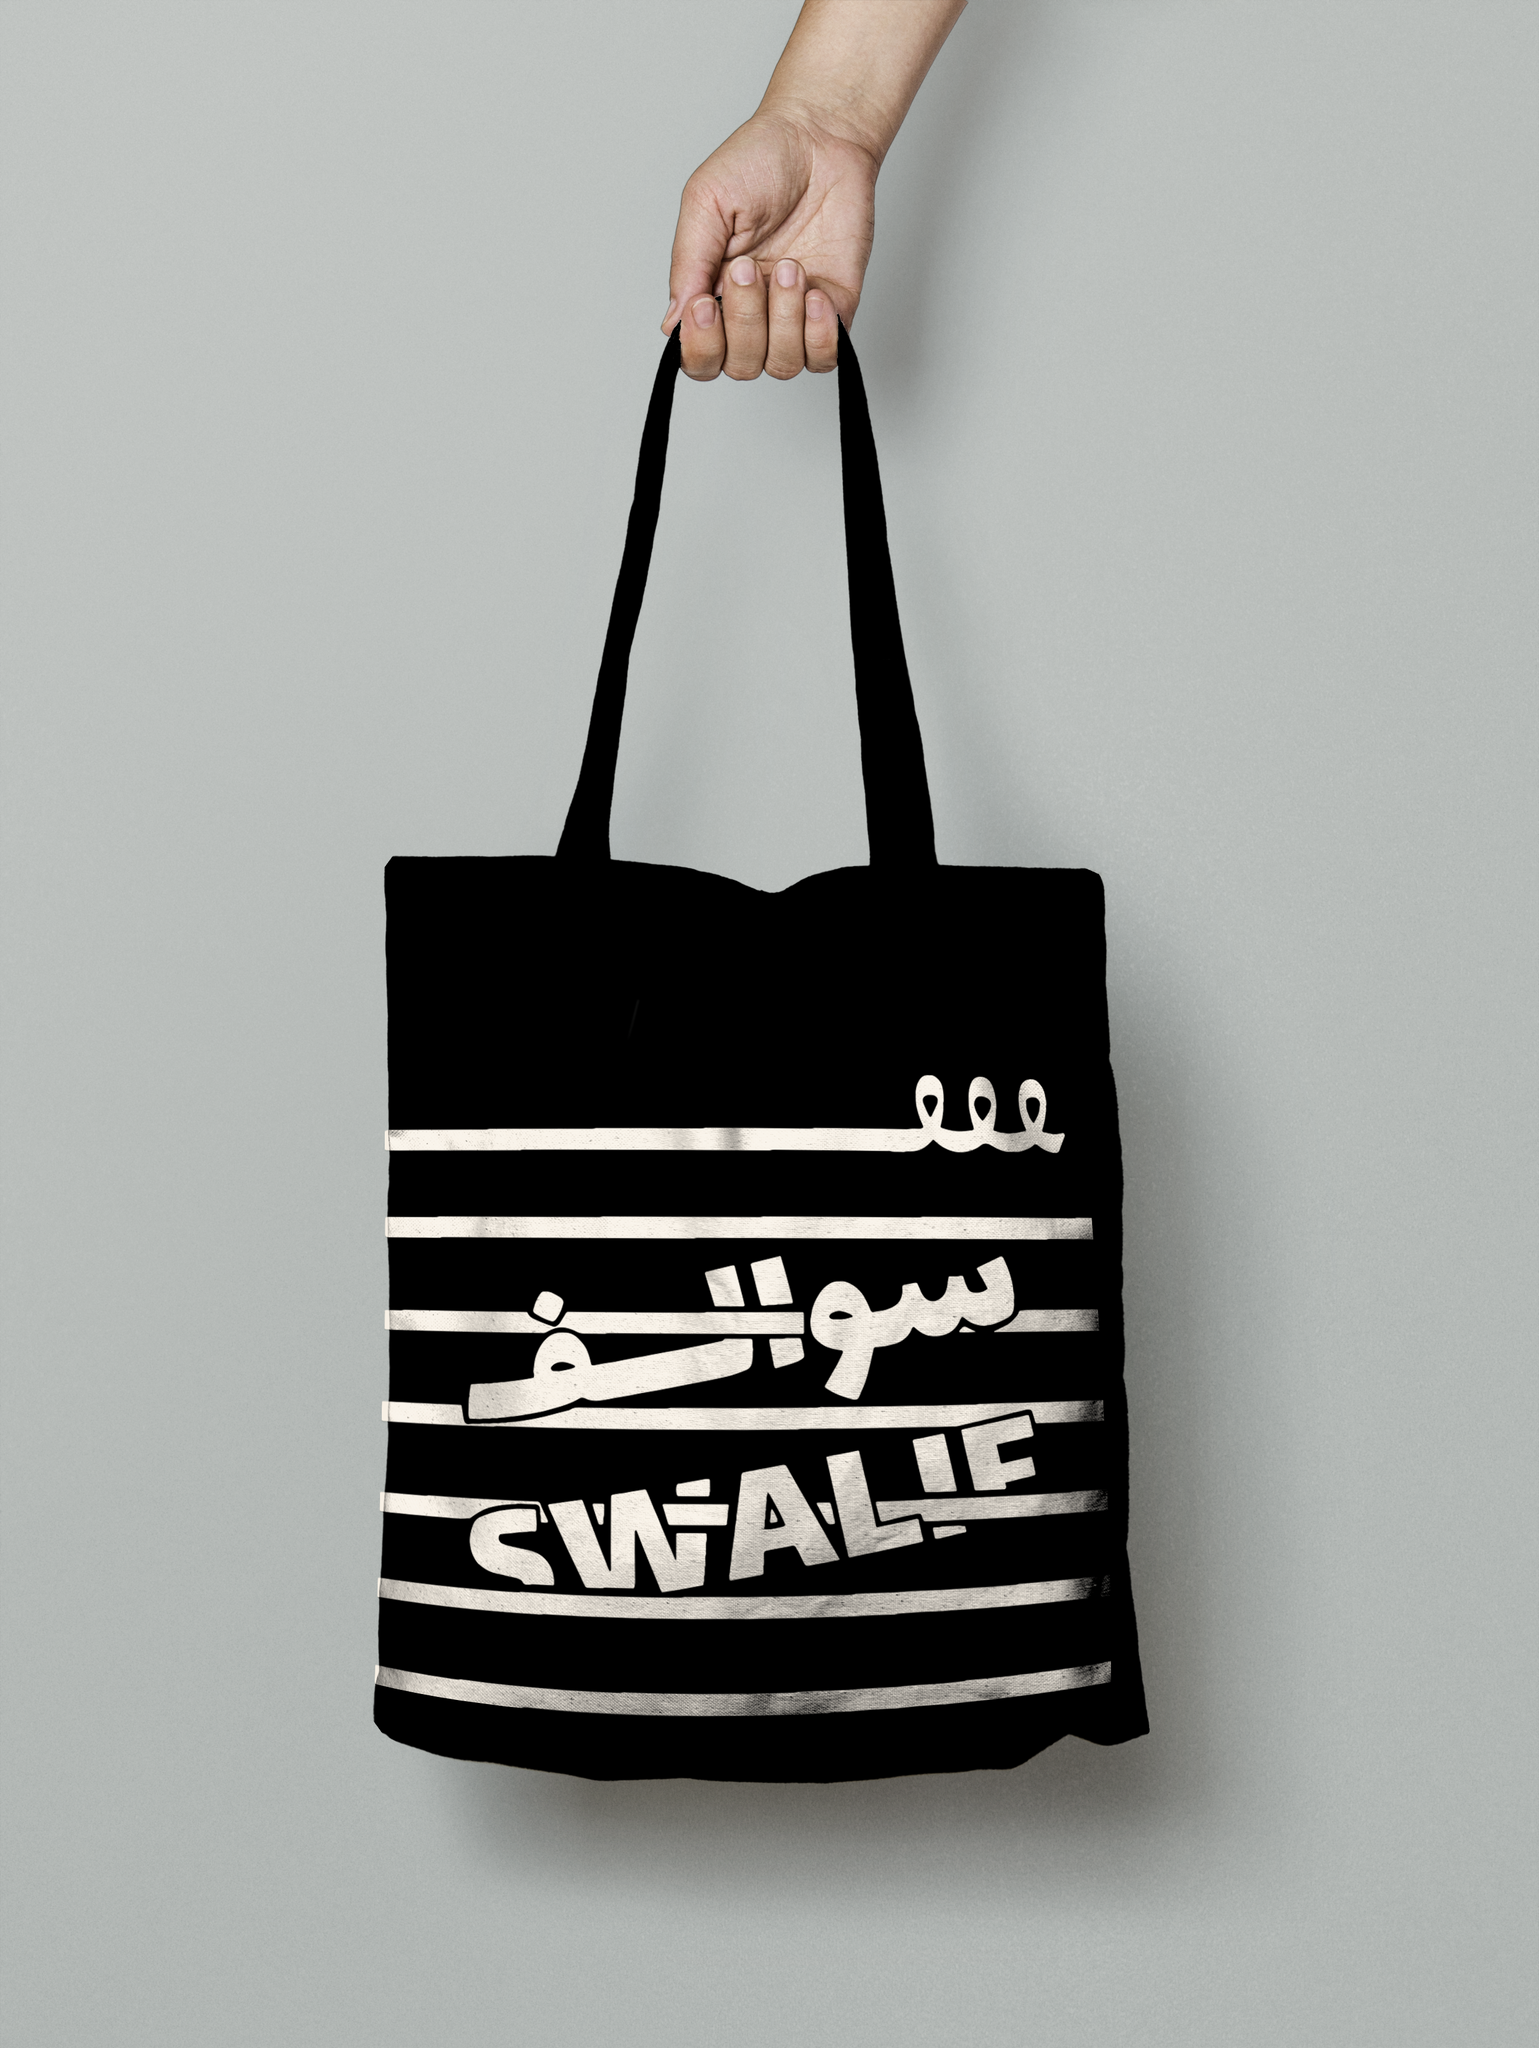 SWALIF Tote Bags